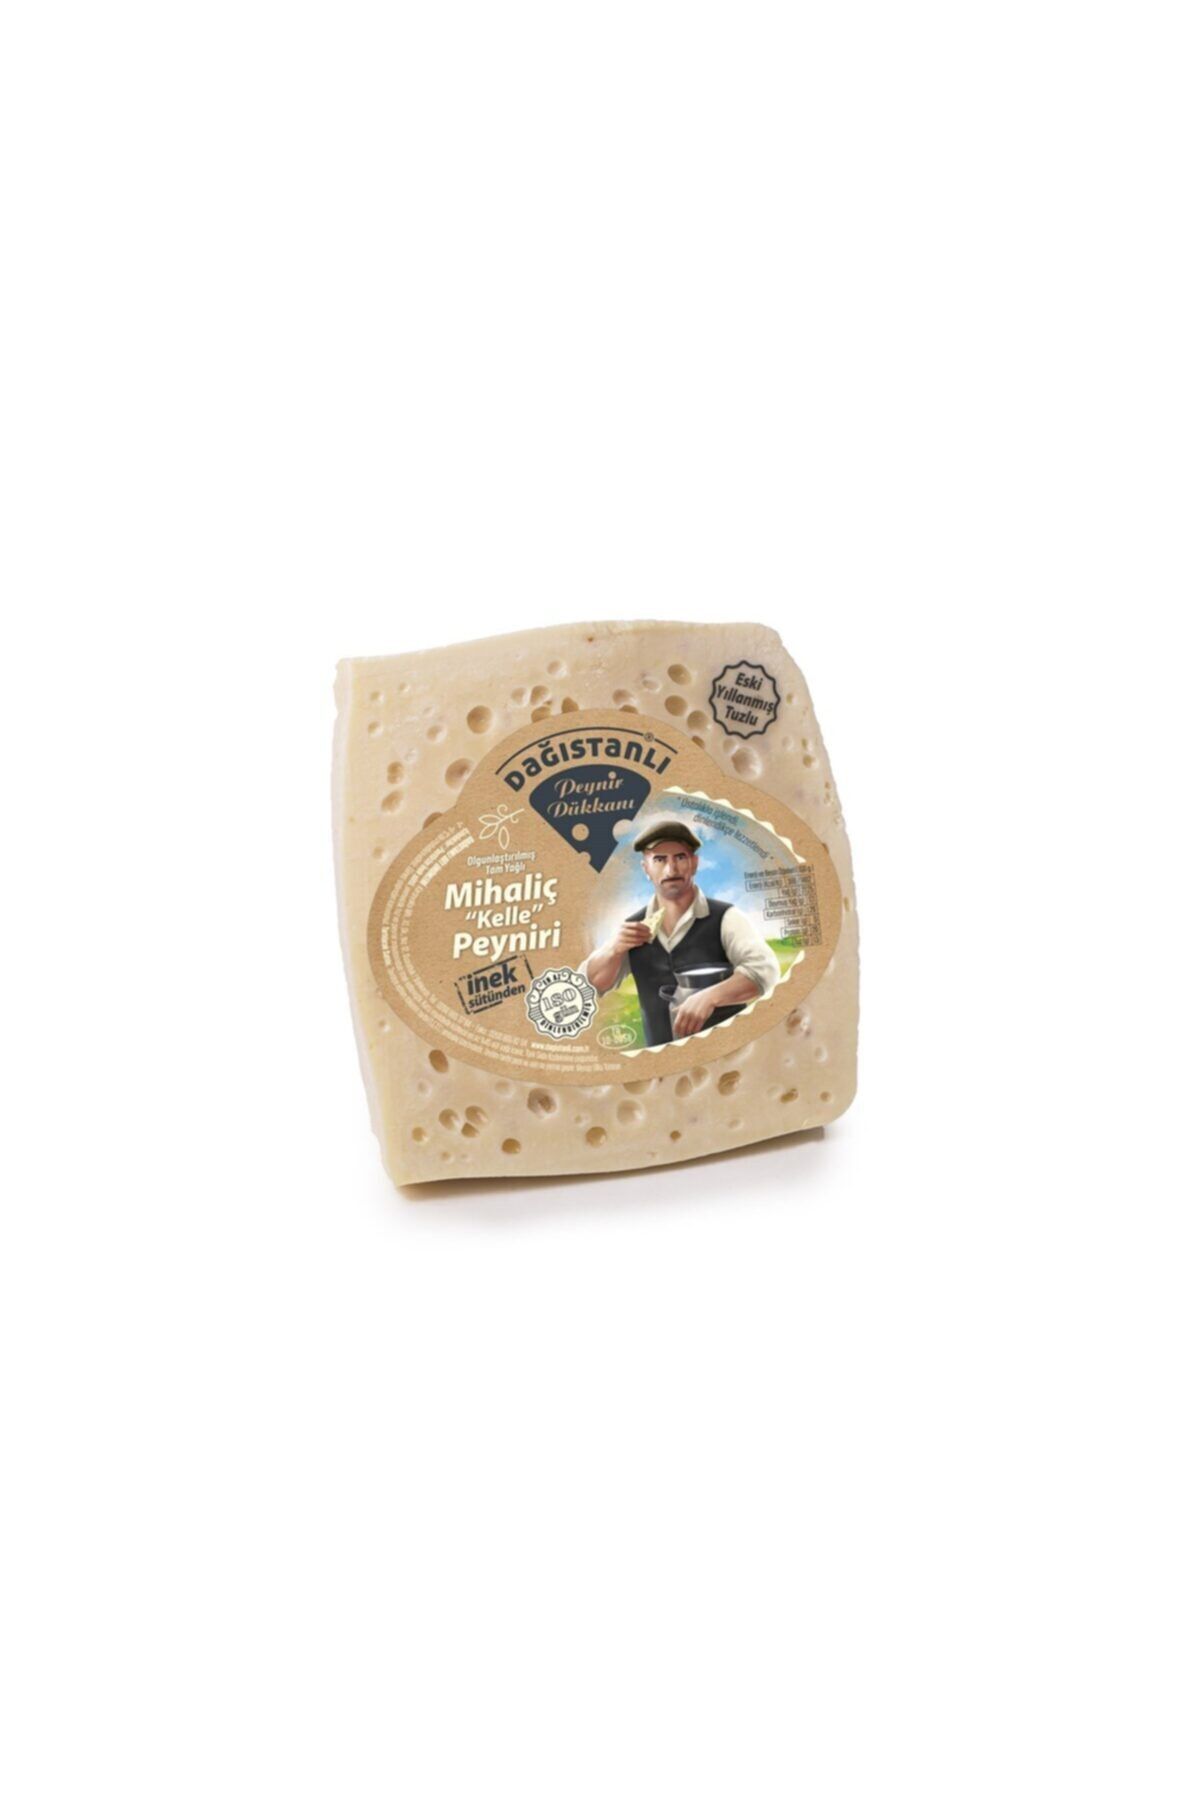 Dağıstanlı Özel Mihaliç (KELLE) Peyniri Bahar Sütünden Eski Yıllanmış Tuzlu 1000gr